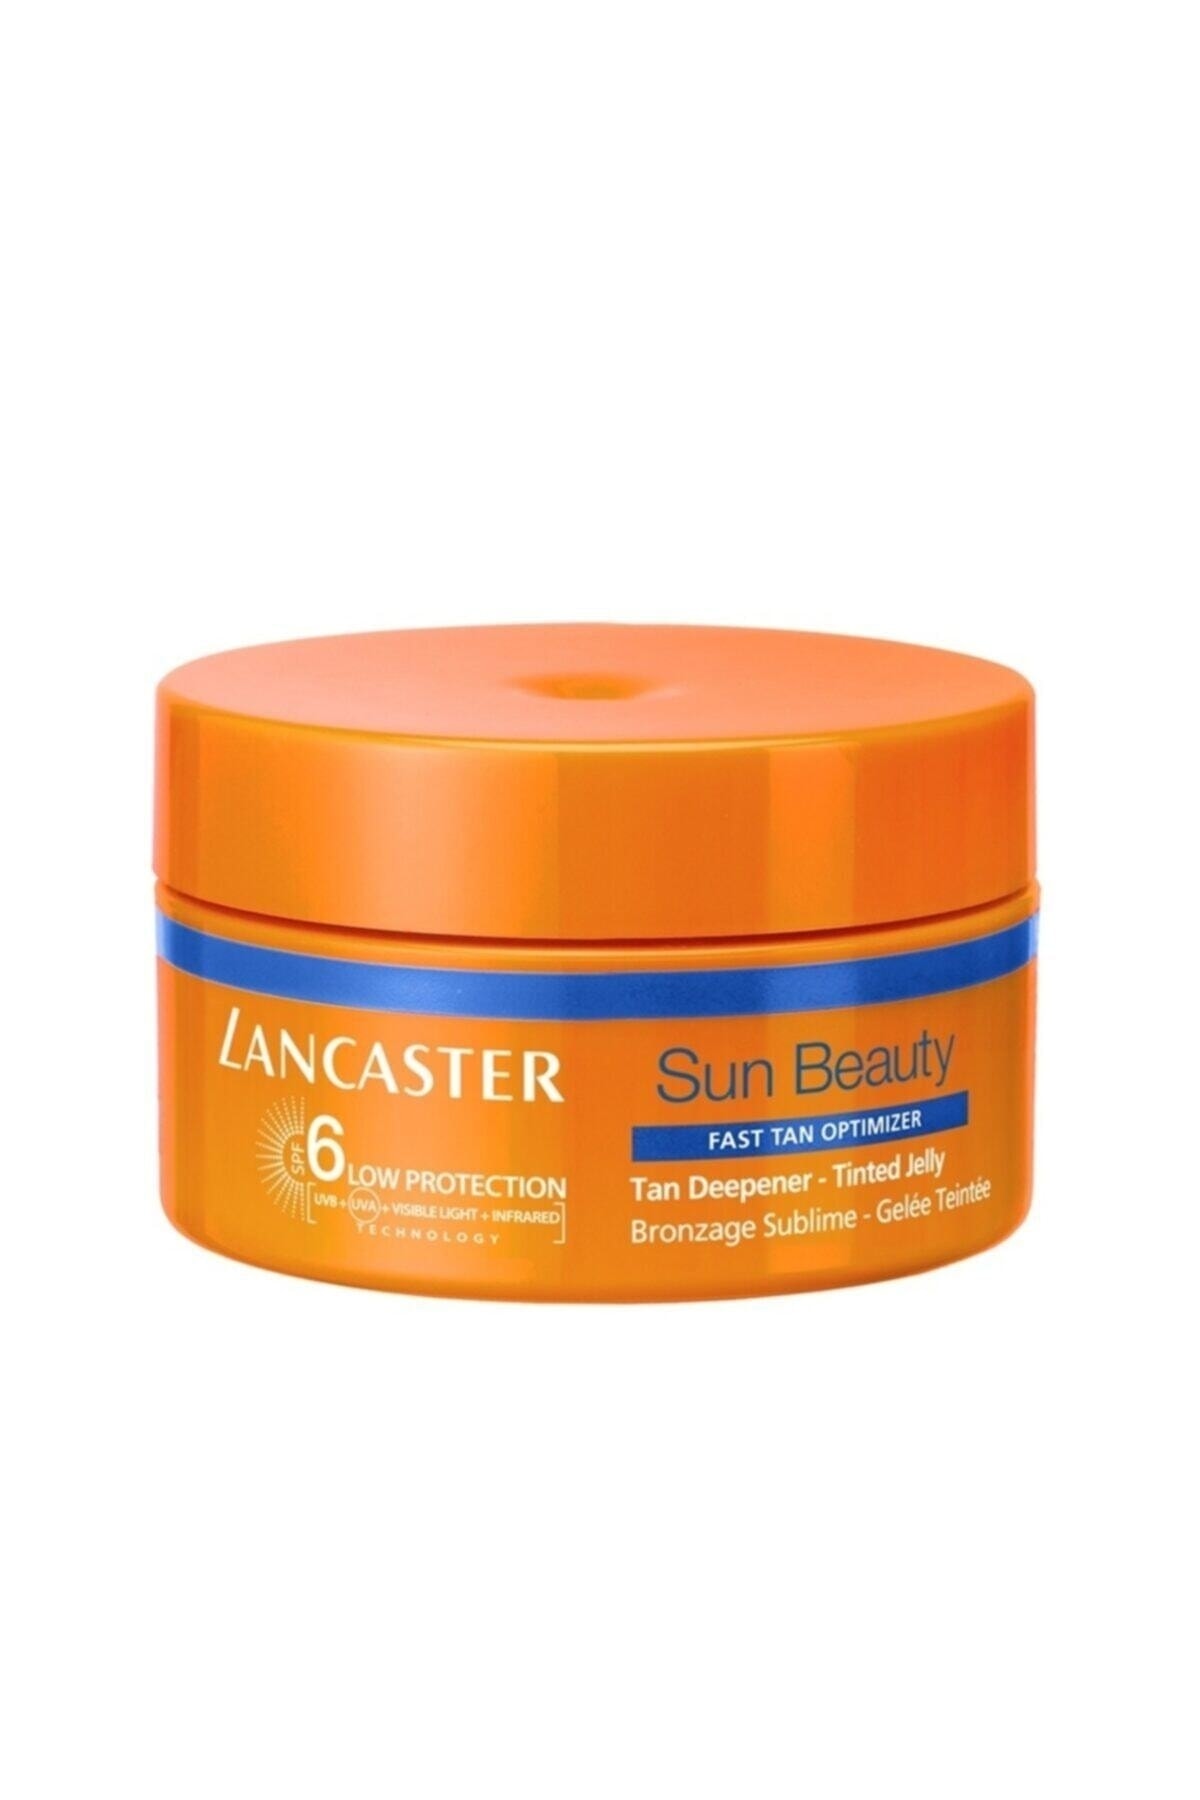 Lancaster La Sun Beauty Tan Deepener - Tinted Spf6 200ml Güneş Ürünü*.